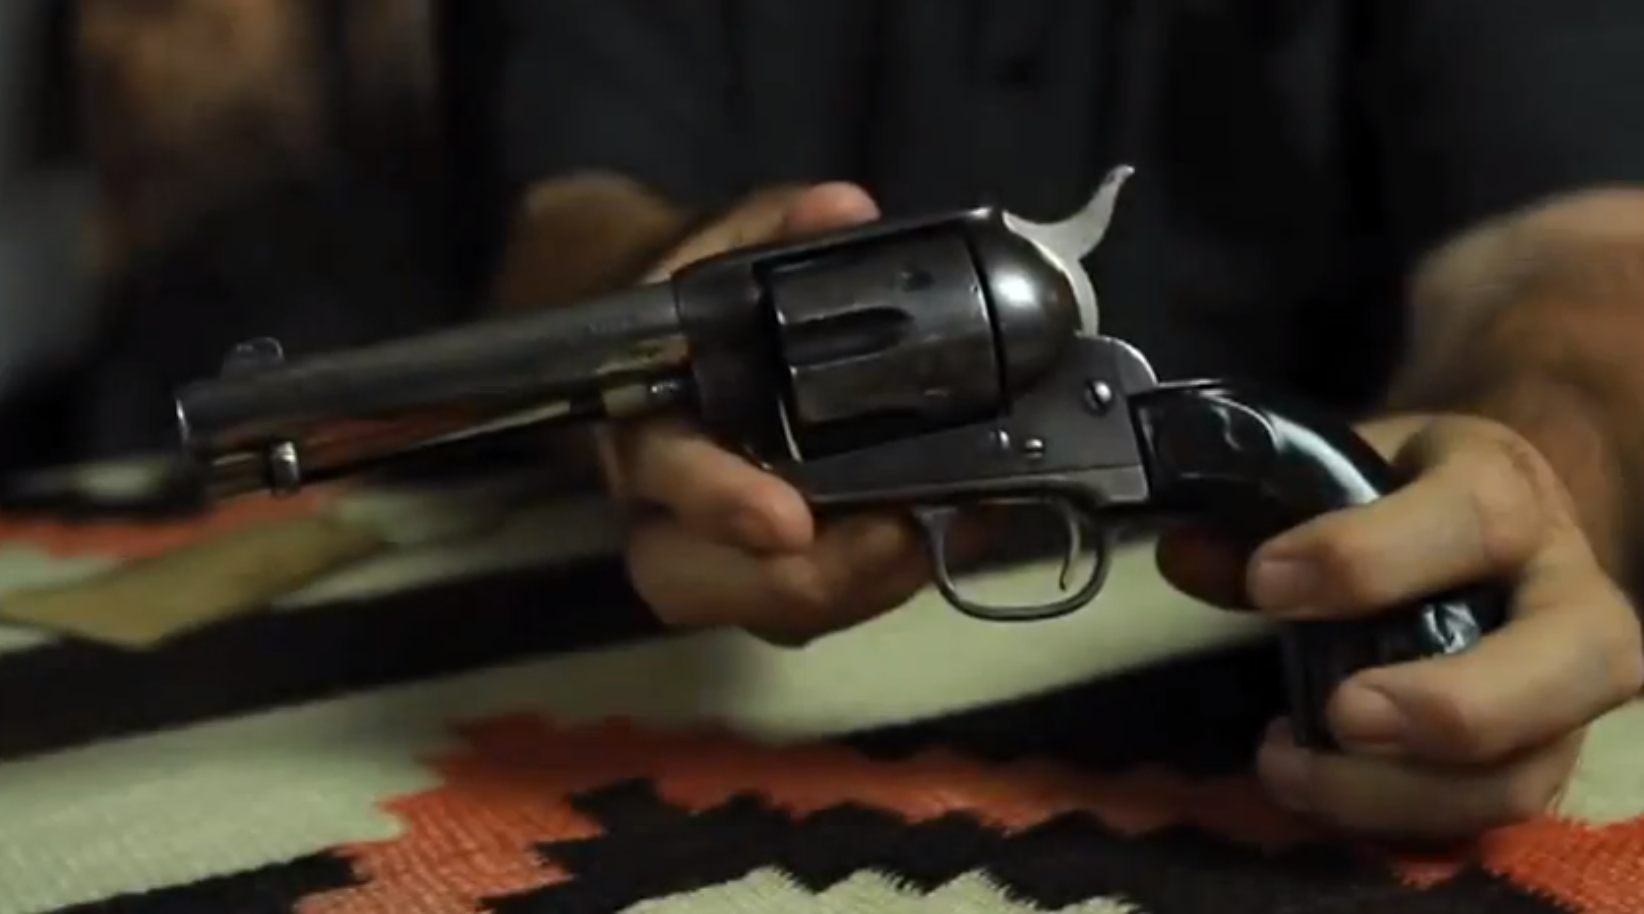 Le pistolet aurait été remis par Butch Cassidy à un sheriff.